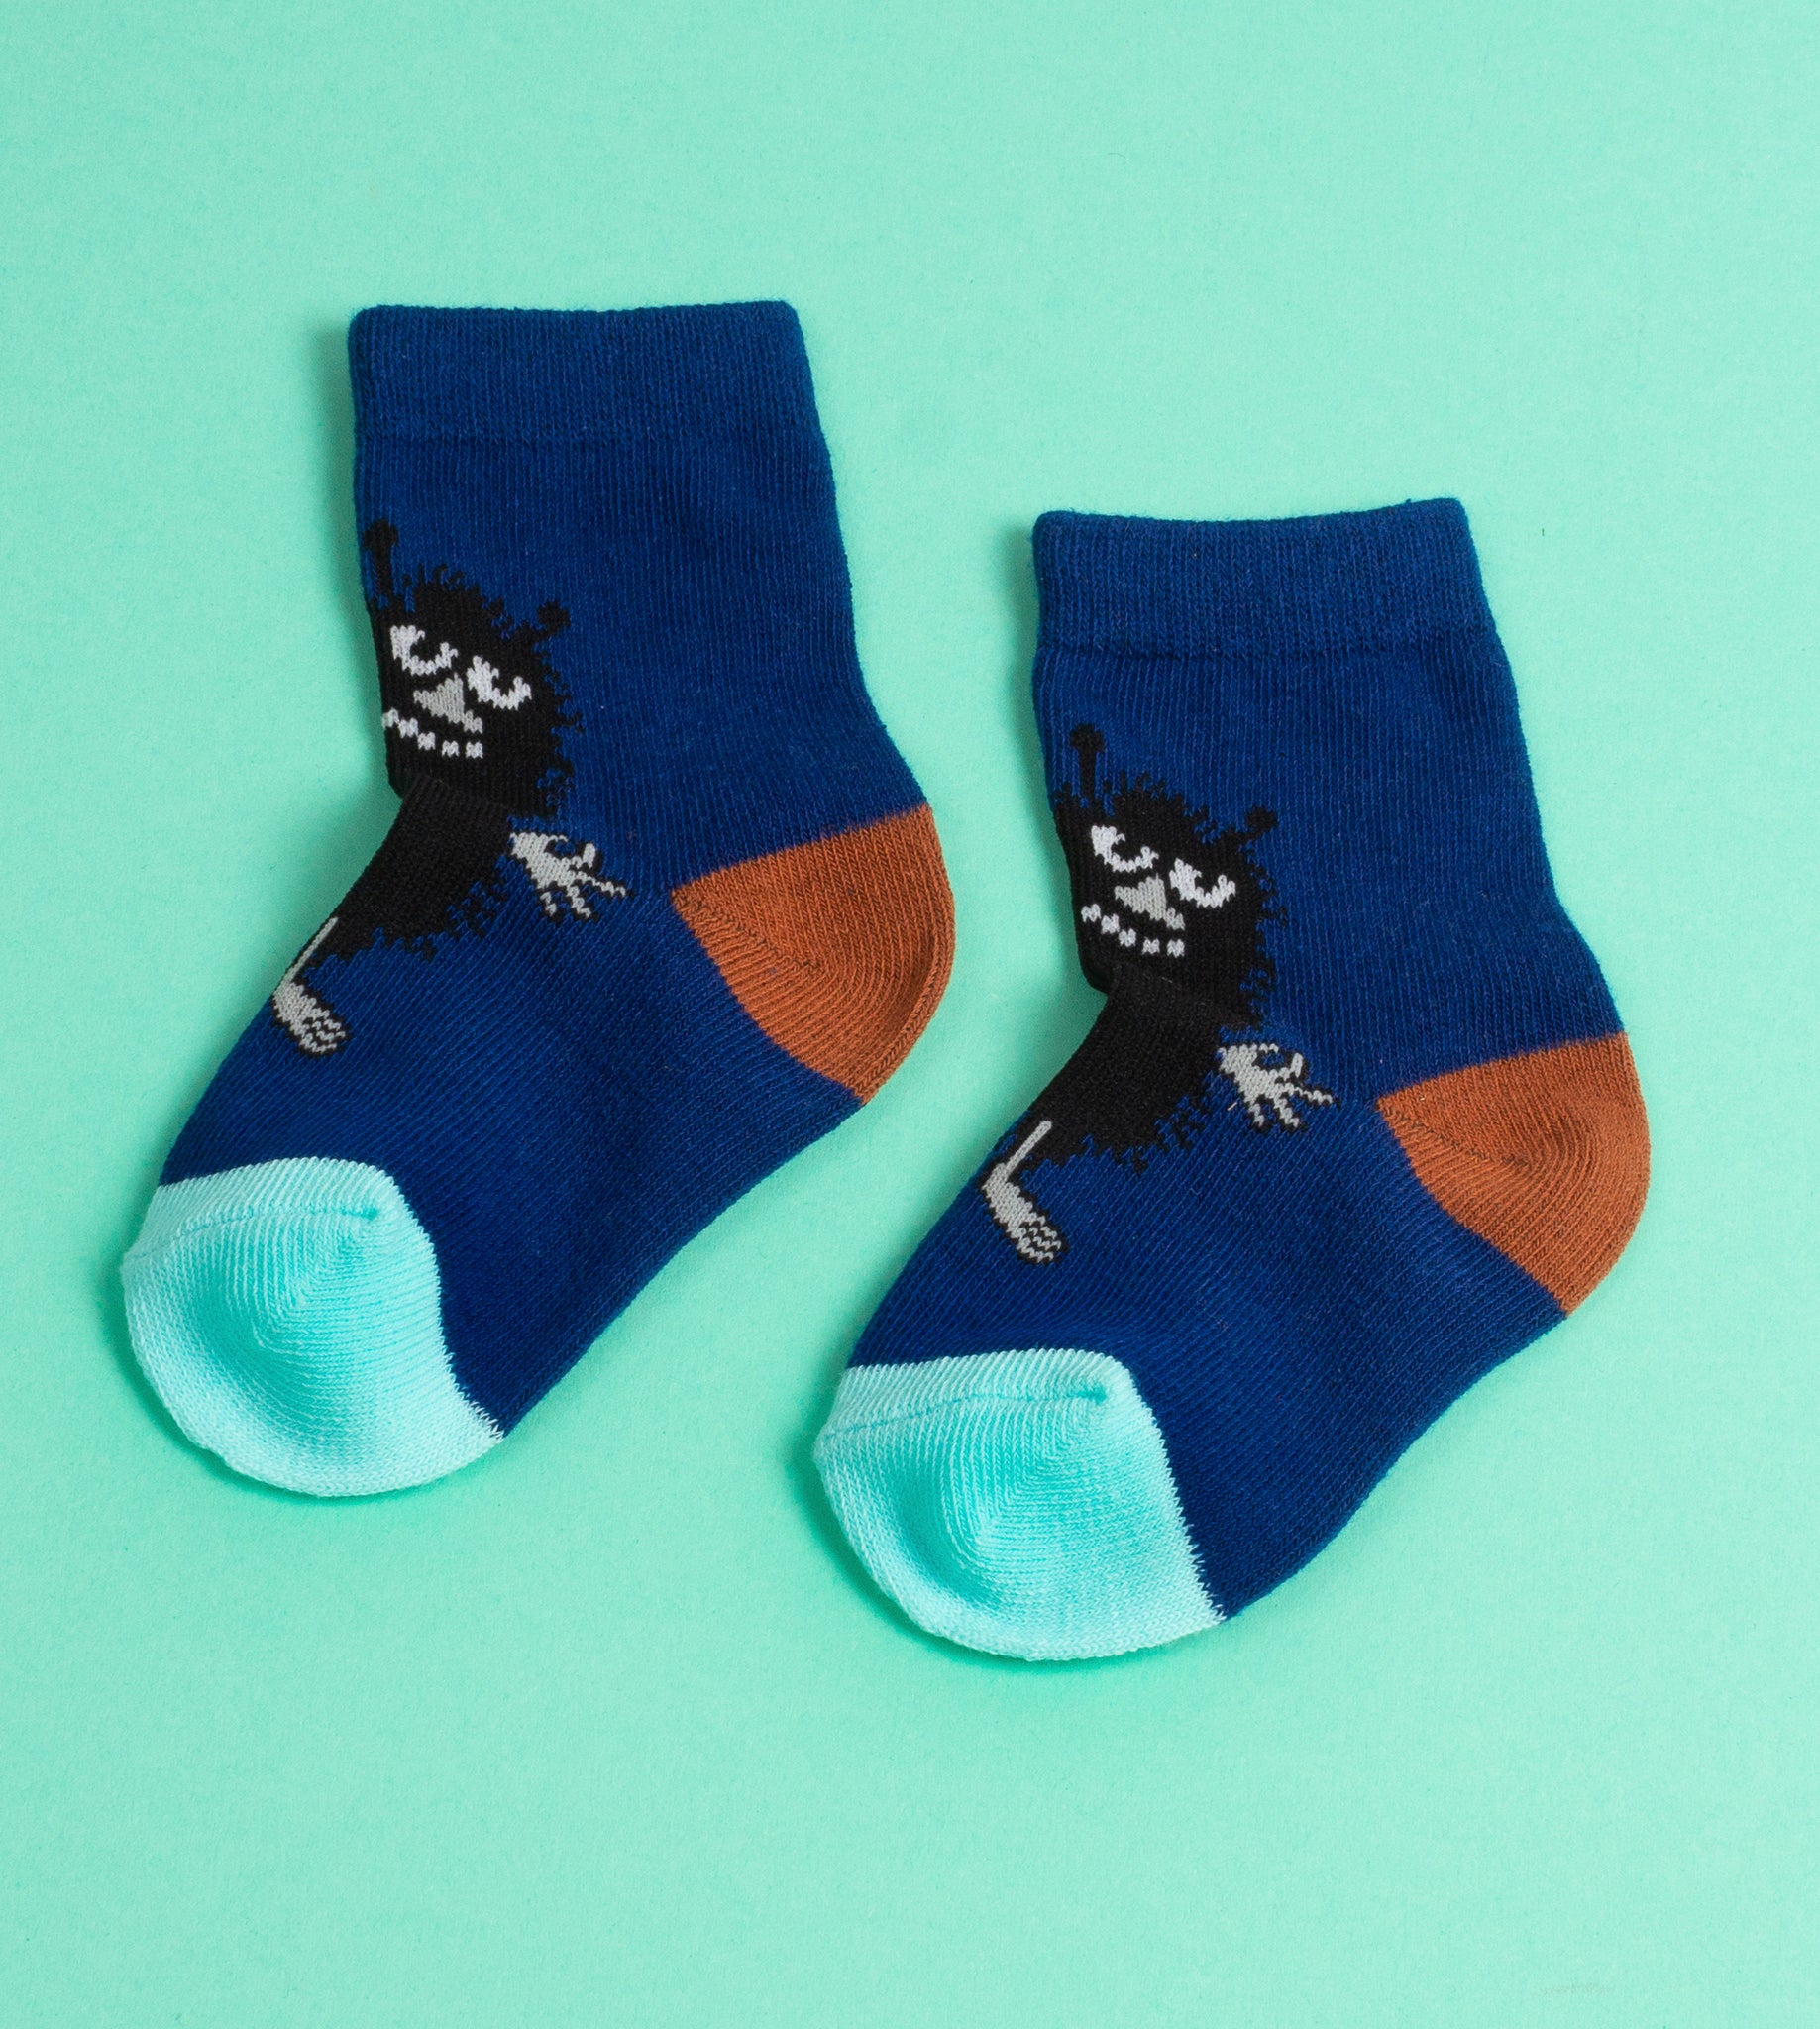 Moomin Baby Socks Douple Pack Blue Stinky The Groke | Muumi Vauvojen Sukat Tuplapakkaus Sininen Haisuli Mörkö